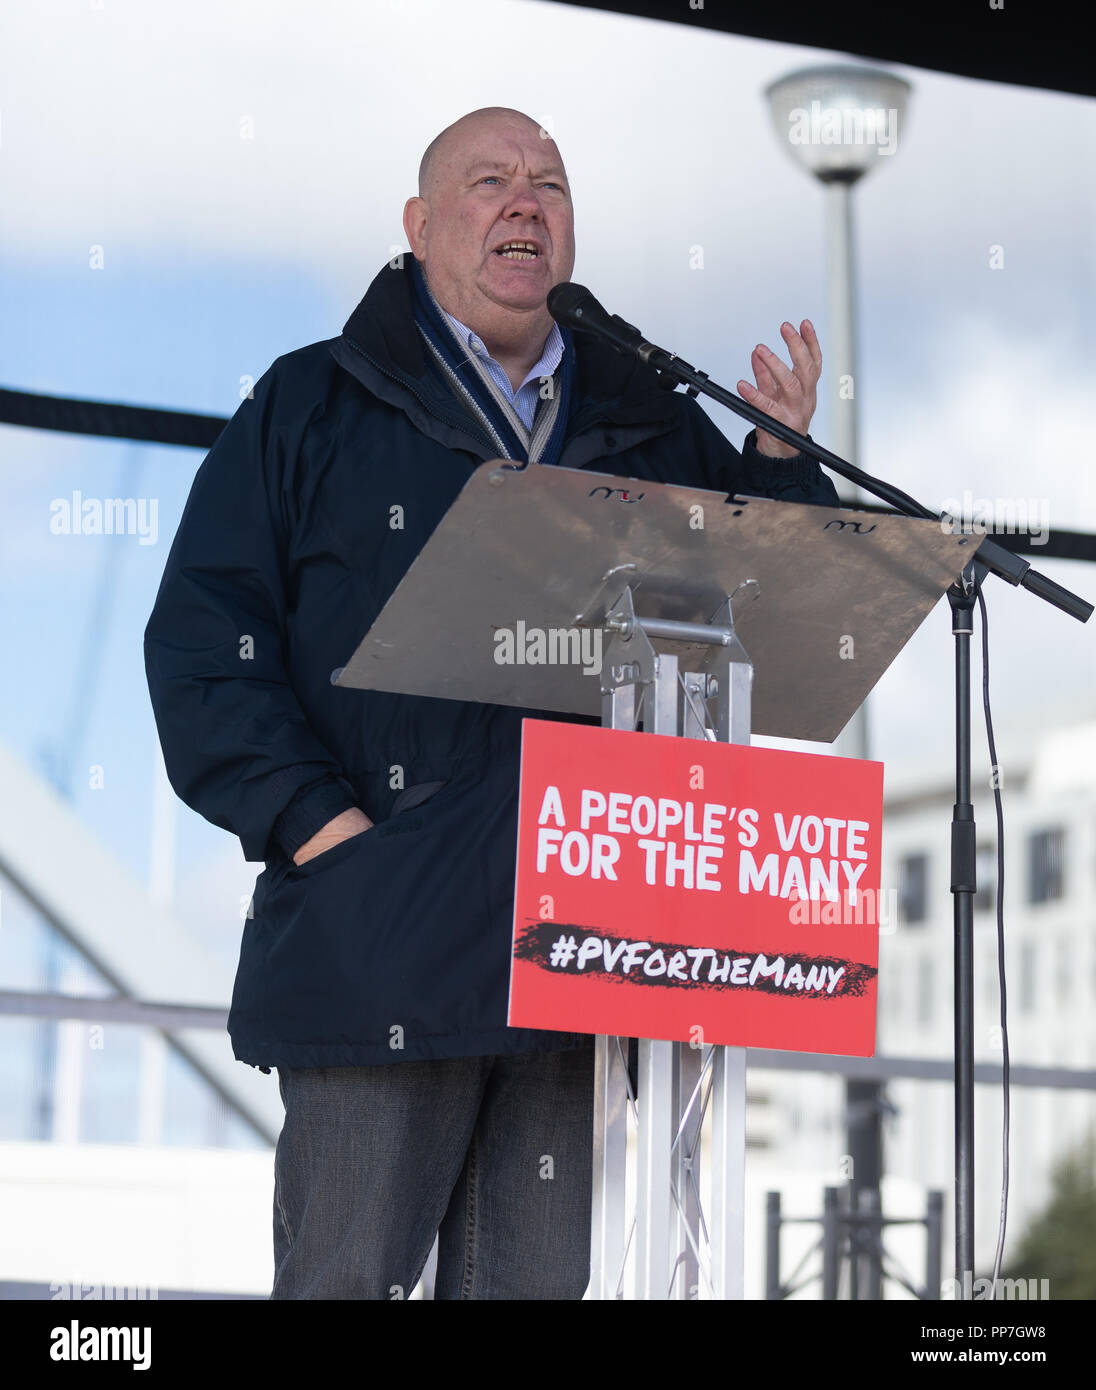 Liverpool, Reino Unido. El domingo 23 de septiembre de 2018.Joe Anderson, Alcalde de Liverpool conversaciones en el Pier Head en el rallye tras la marcha. © Phil Portus / Alamy Live News Foto de stock